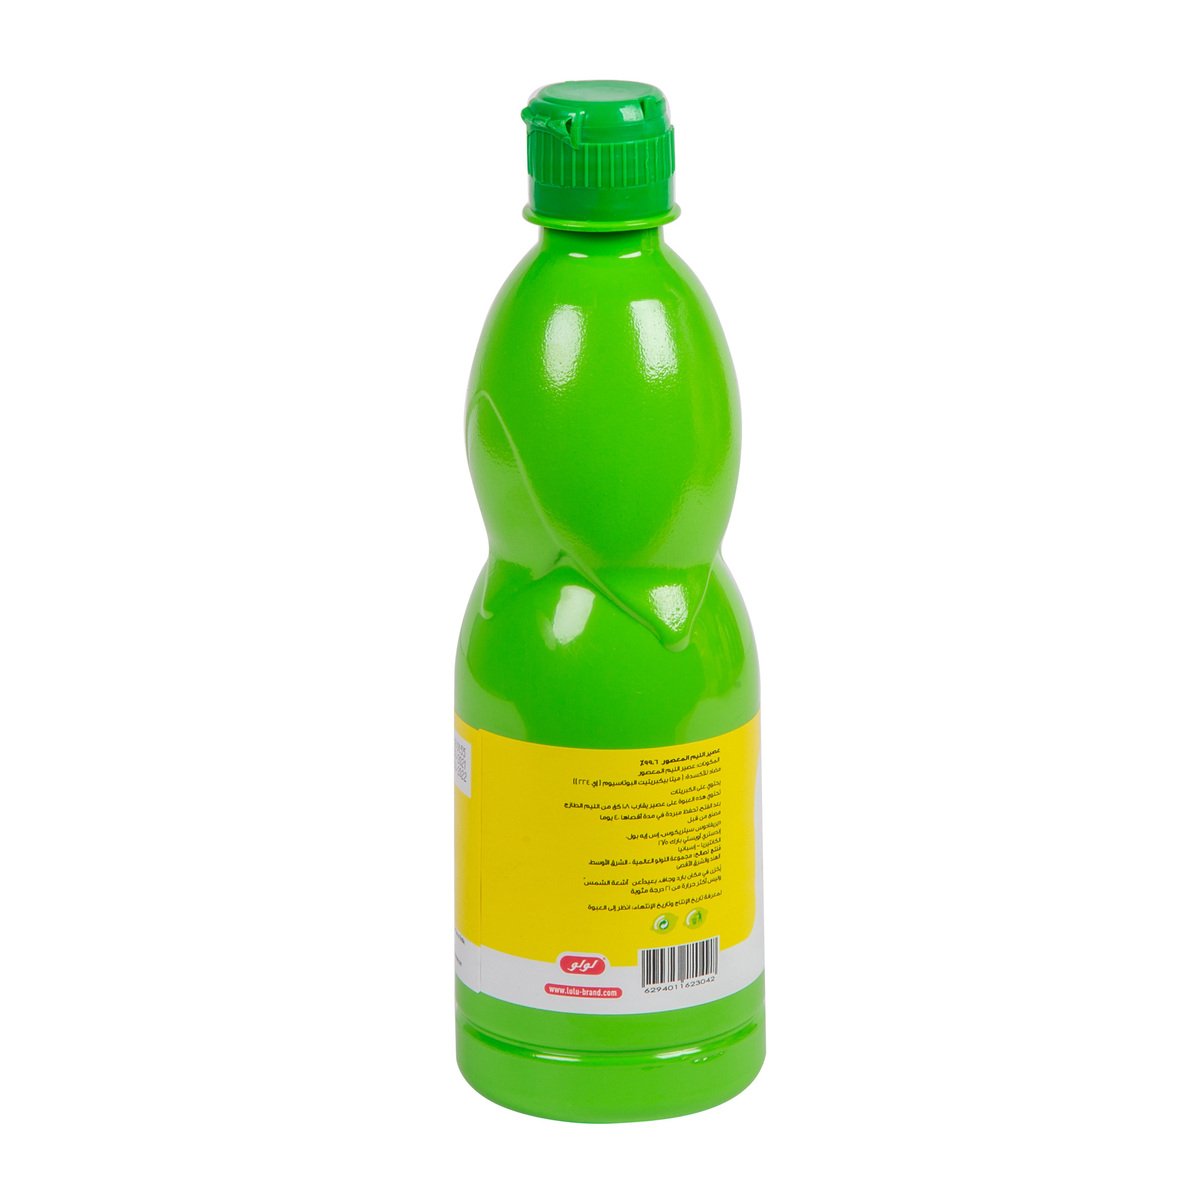 LuLu Lime Juice 500 ml